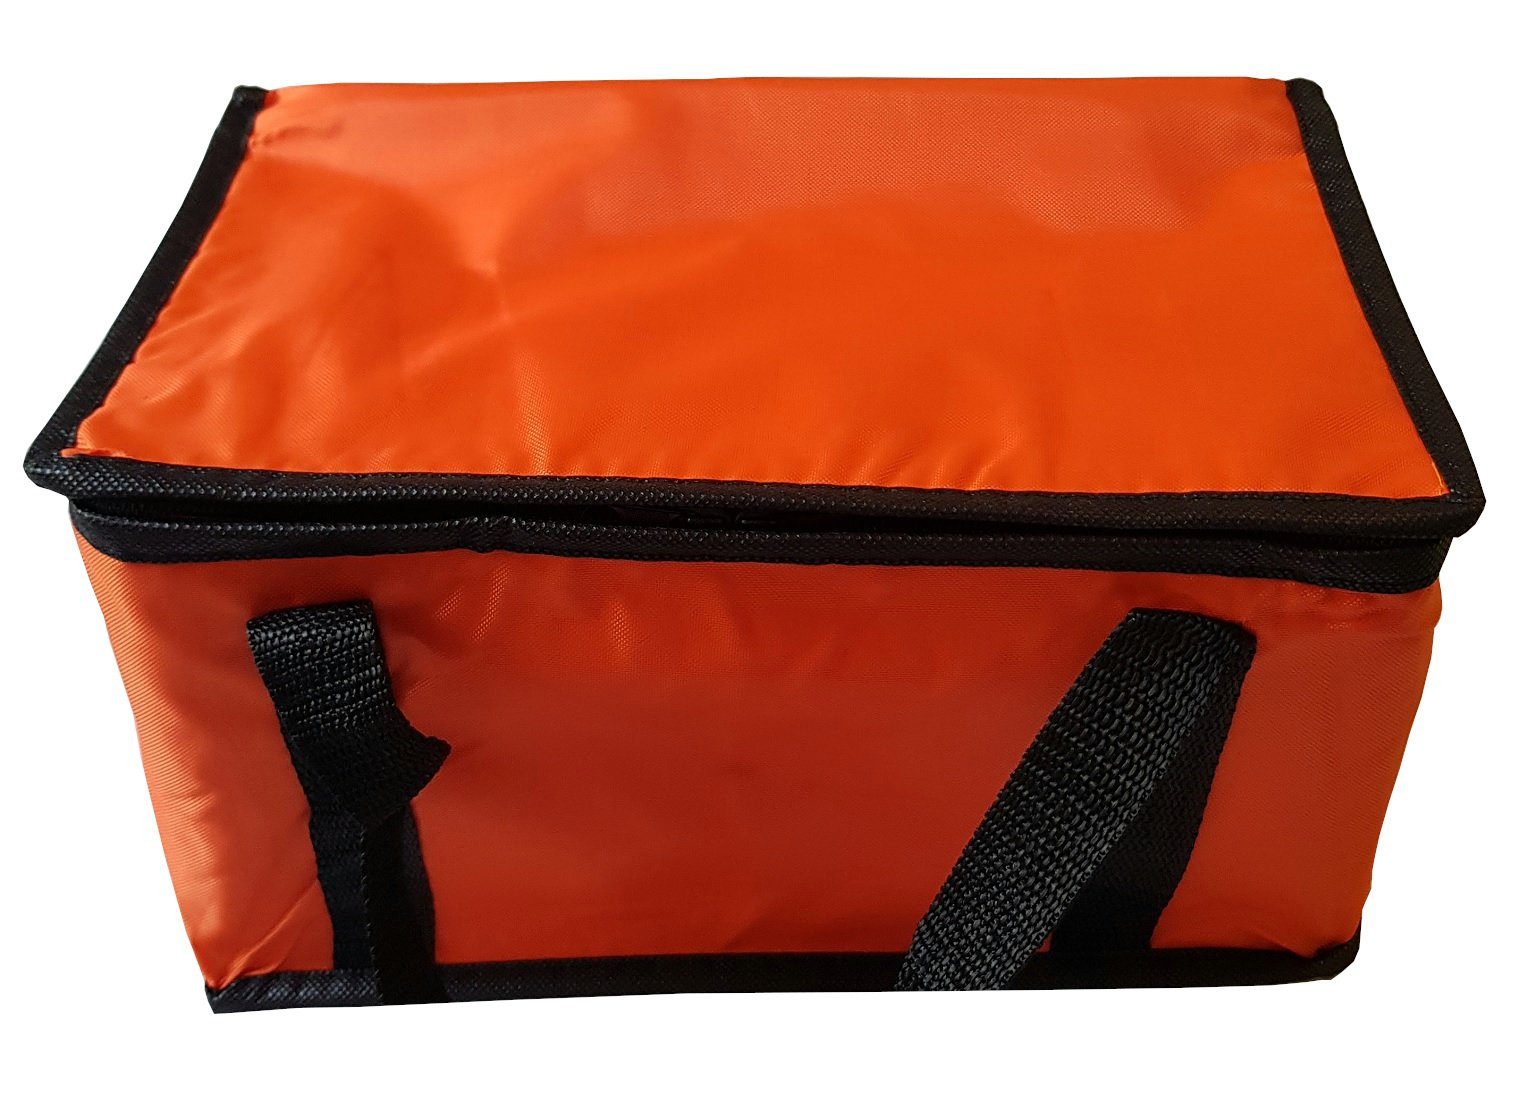 Picknicktasche Kühlbox Kühltasche 9,5L Kühltasche Einkaufstasche Orange Isoliertasche Provance